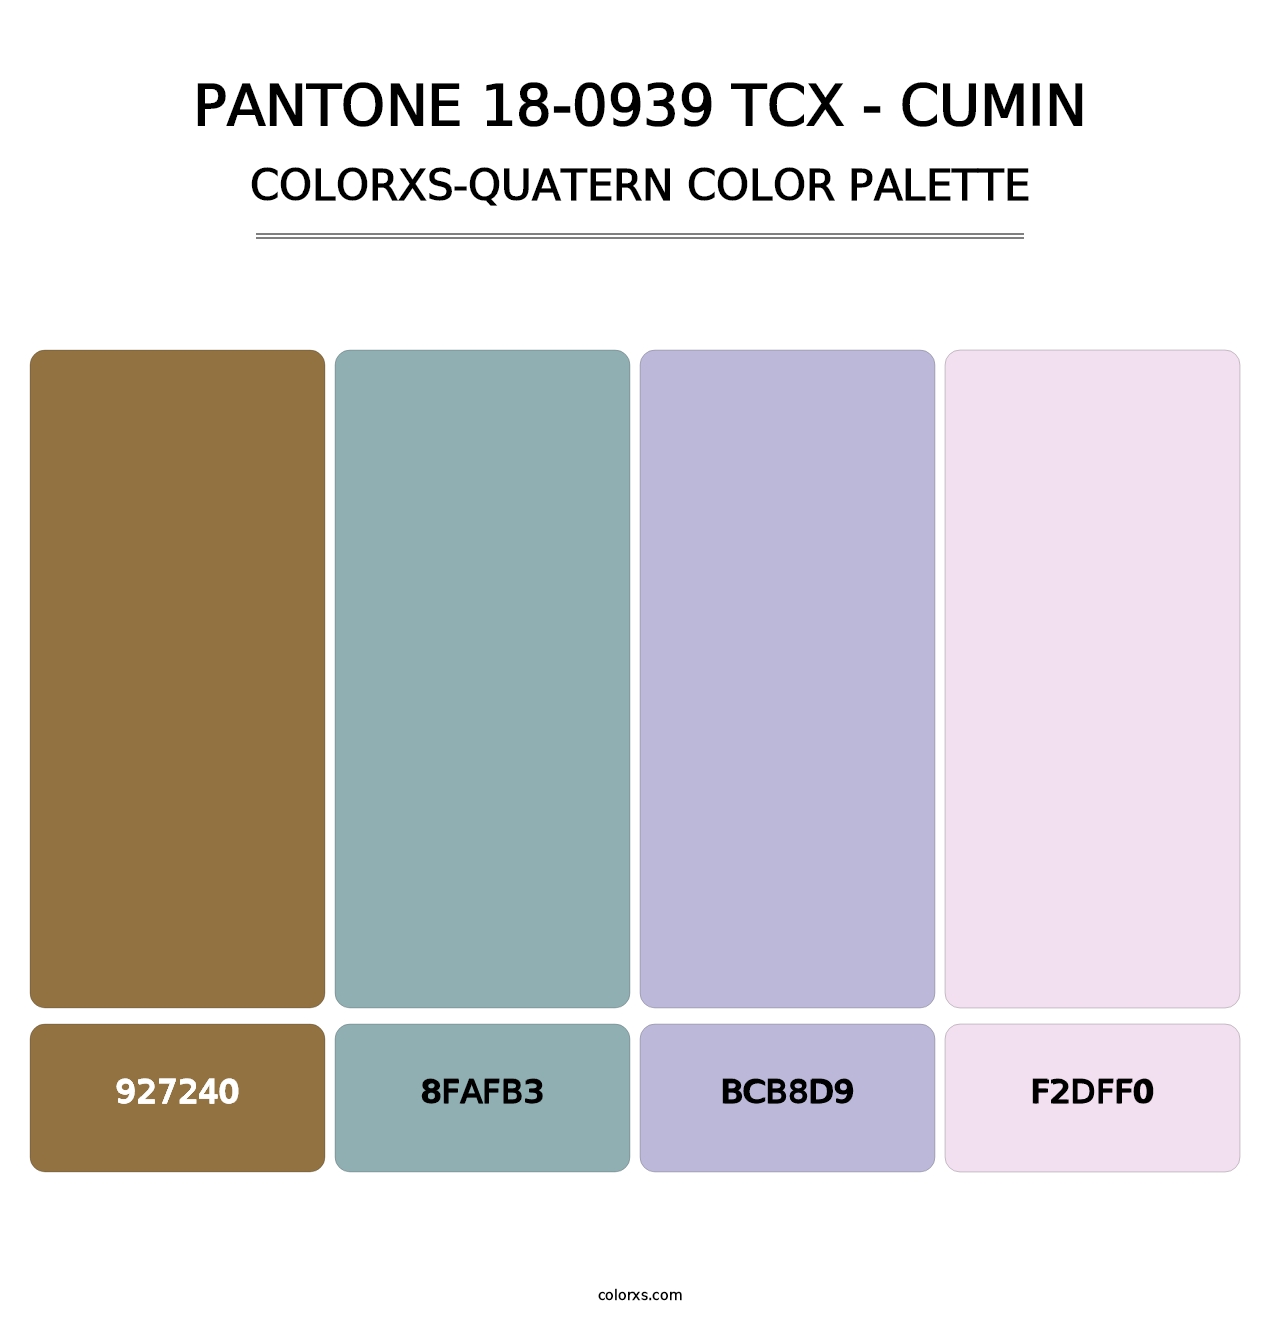 PANTONE 18-0939 TCX - Cumin - Colorxs Quatern Palette